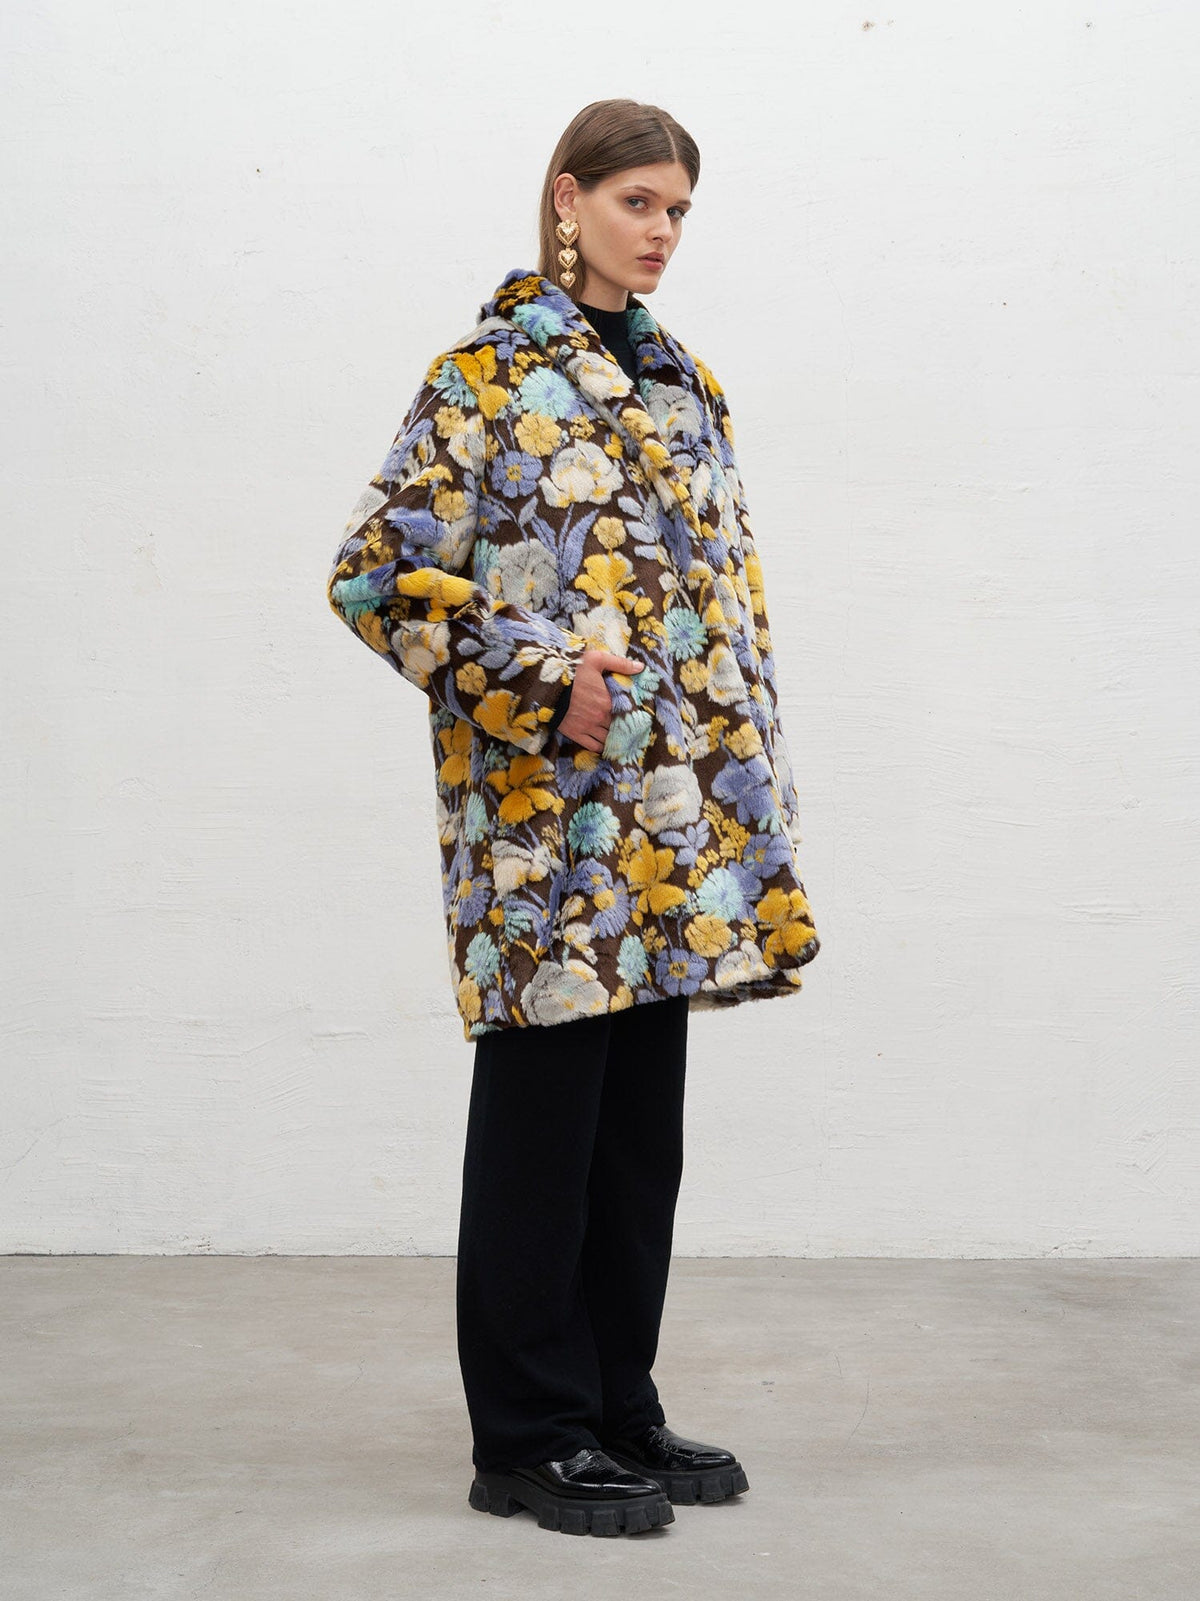 NATALIA - Manteau mi-long col châle en fausse fourrure motif fleurs multicolores Manteau Fête Impériale